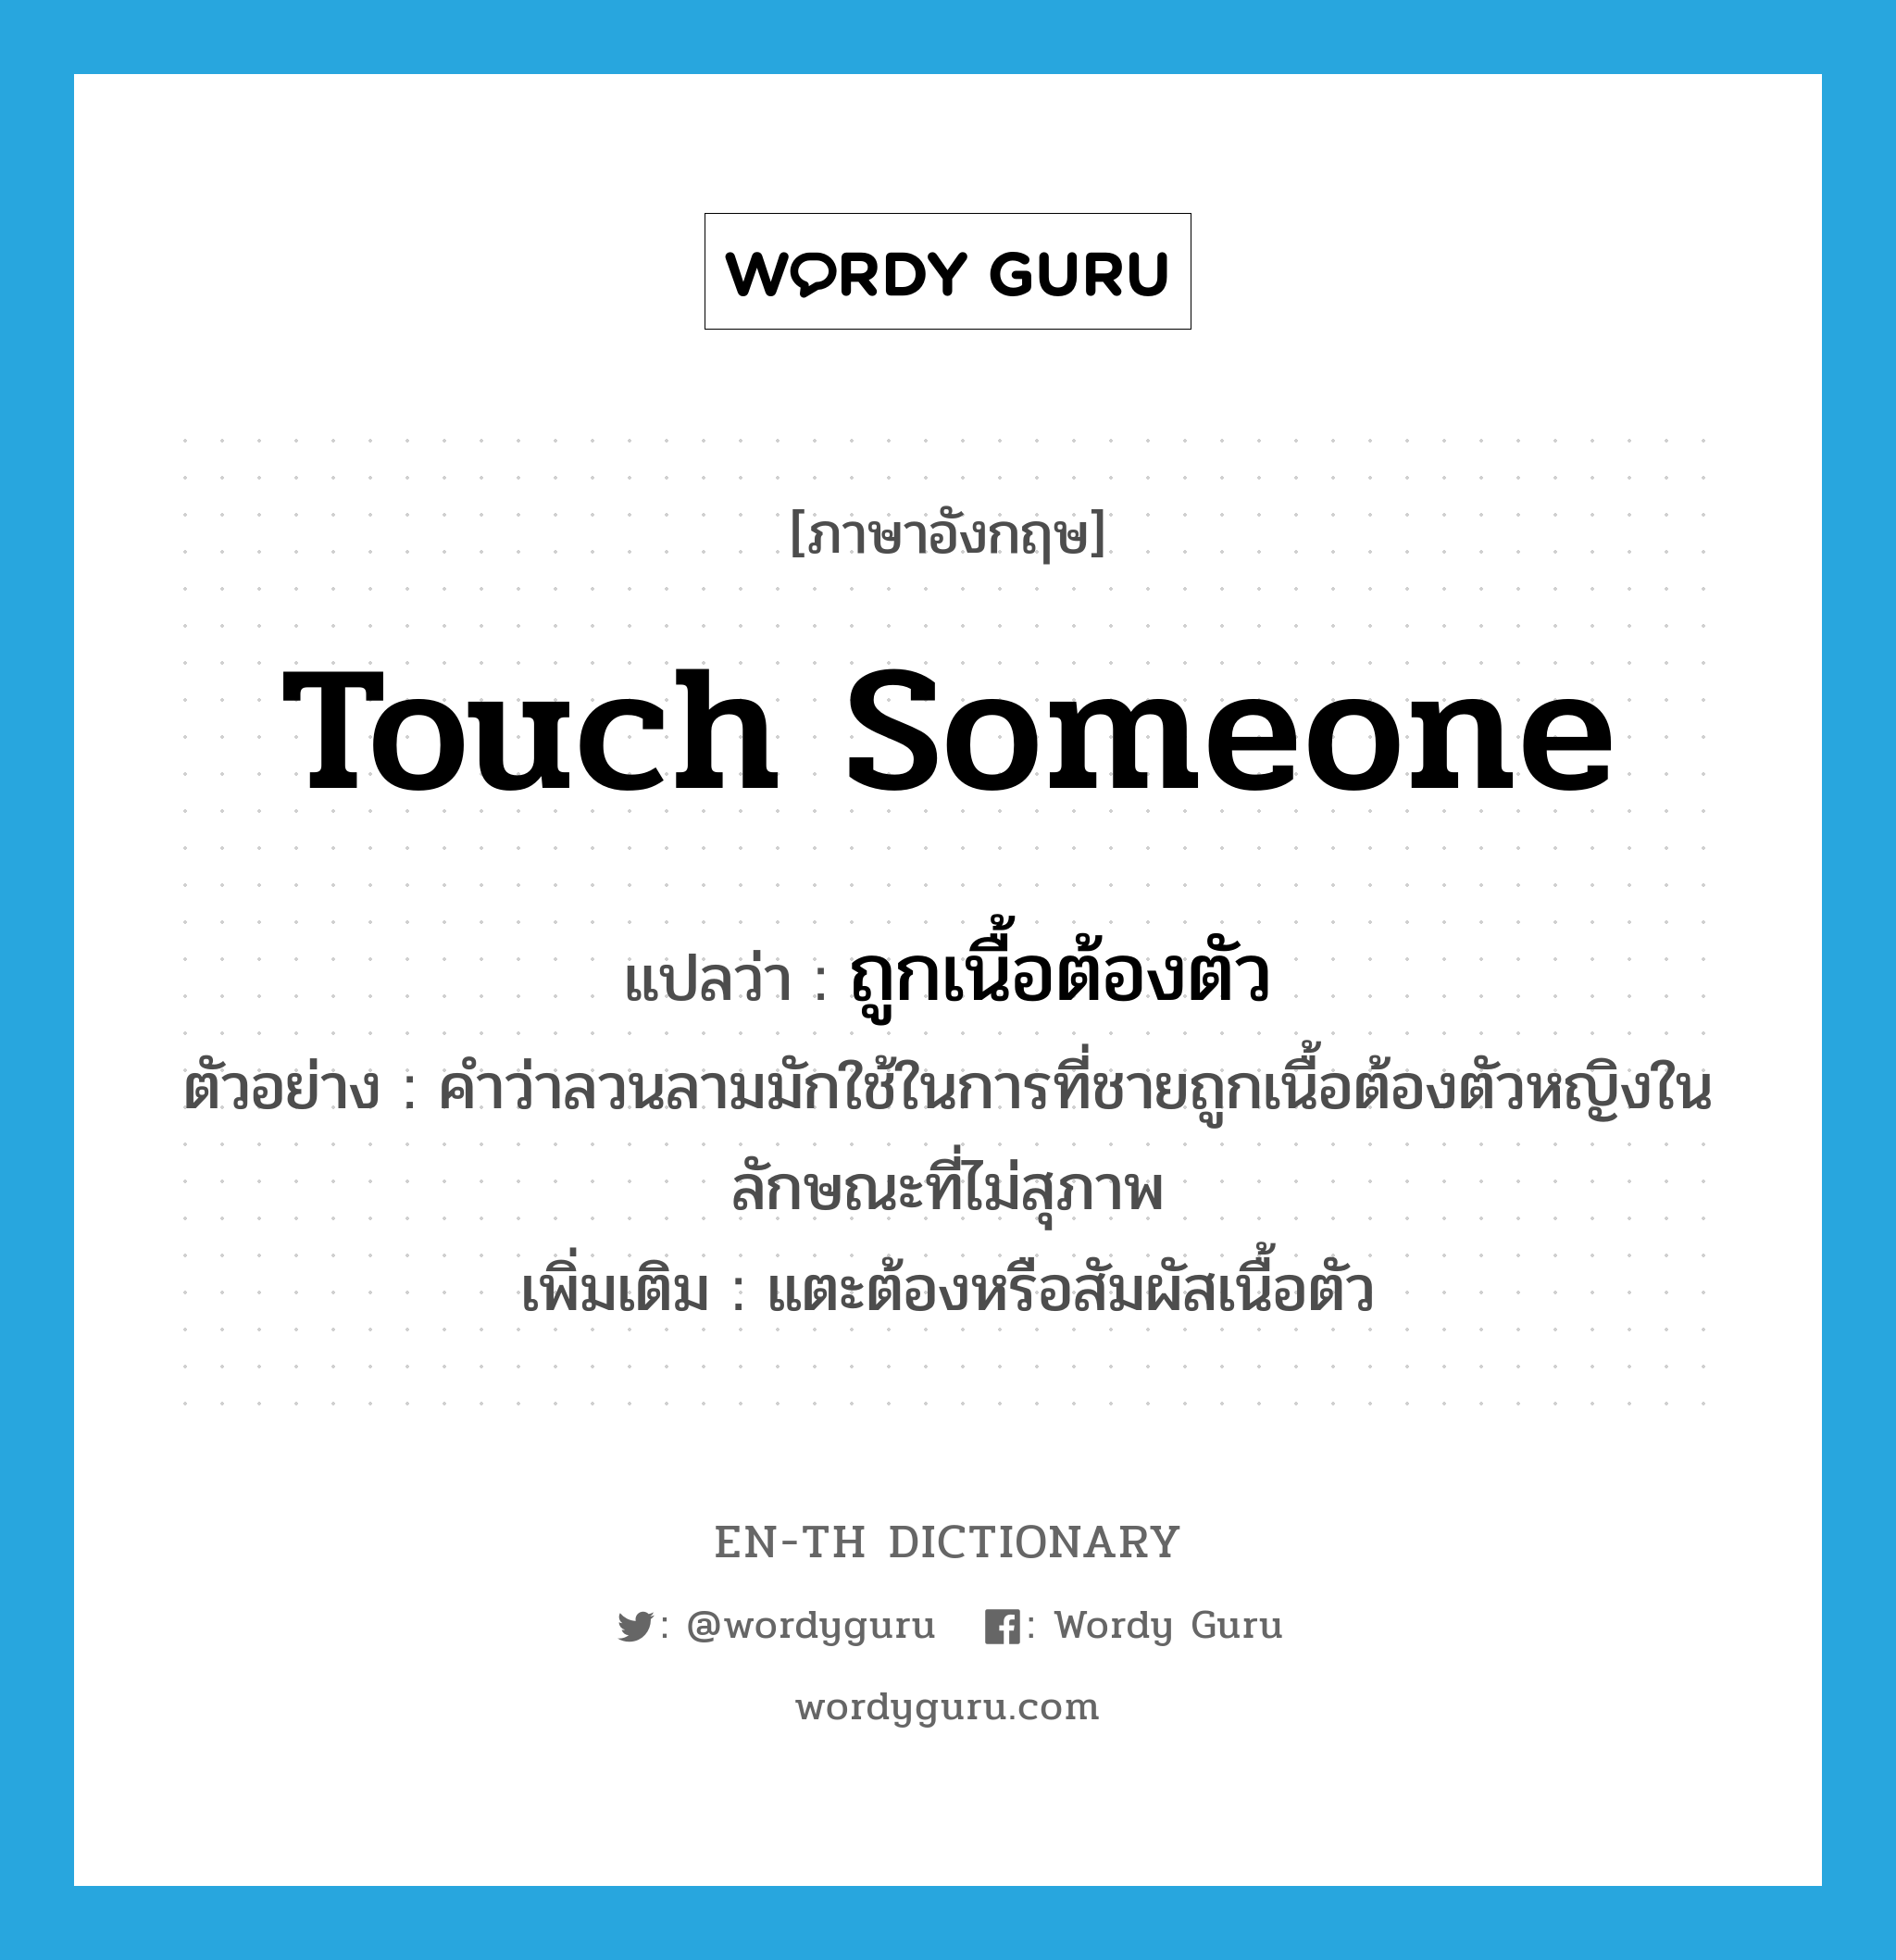 touch someone แปลว่า?, คำศัพท์ภาษาอังกฤษ touch someone แปลว่า ถูกเนื้อต้องตัว ประเภท V ตัวอย่าง คำว่าลวนลามมักใช้ในการที่ชายถูกเนื้อต้องตัวหญิงในลักษณะที่ไม่สุภาพ เพิ่มเติม แตะต้องหรือสัมผัสเนื้อตัว หมวด V